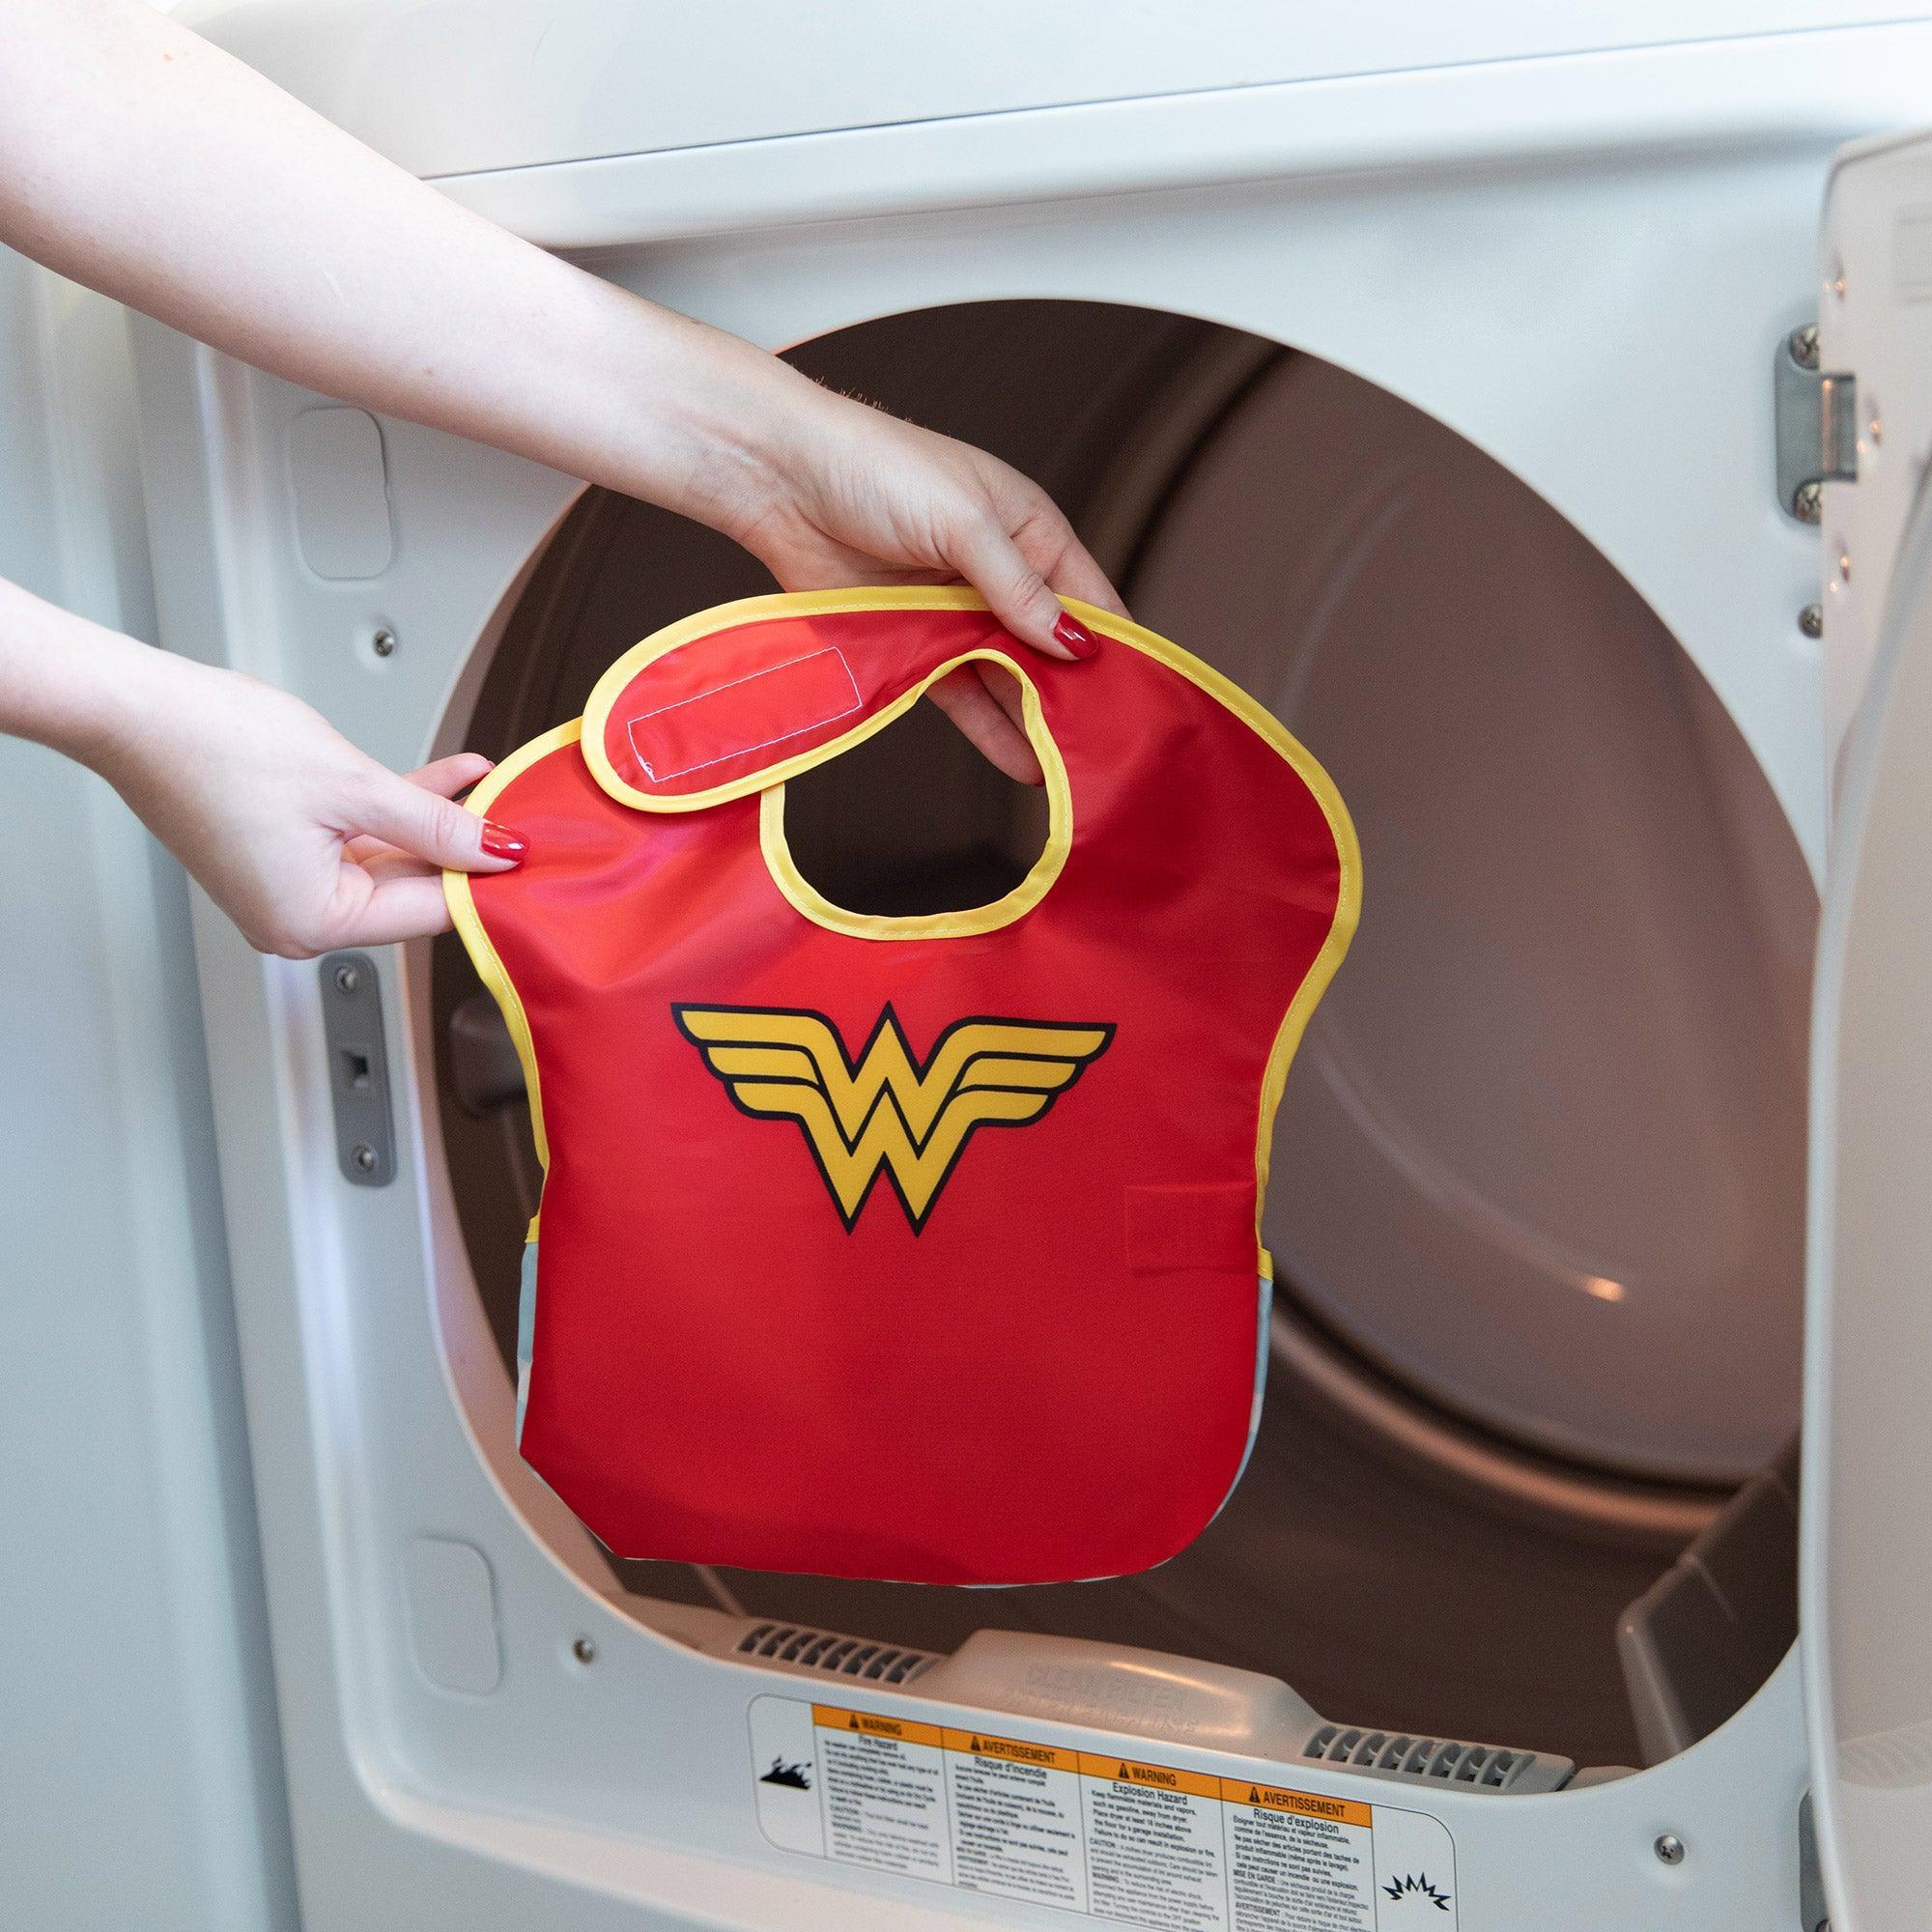 SuperBib® 2 Pack: Wonder Woman - Bumkins